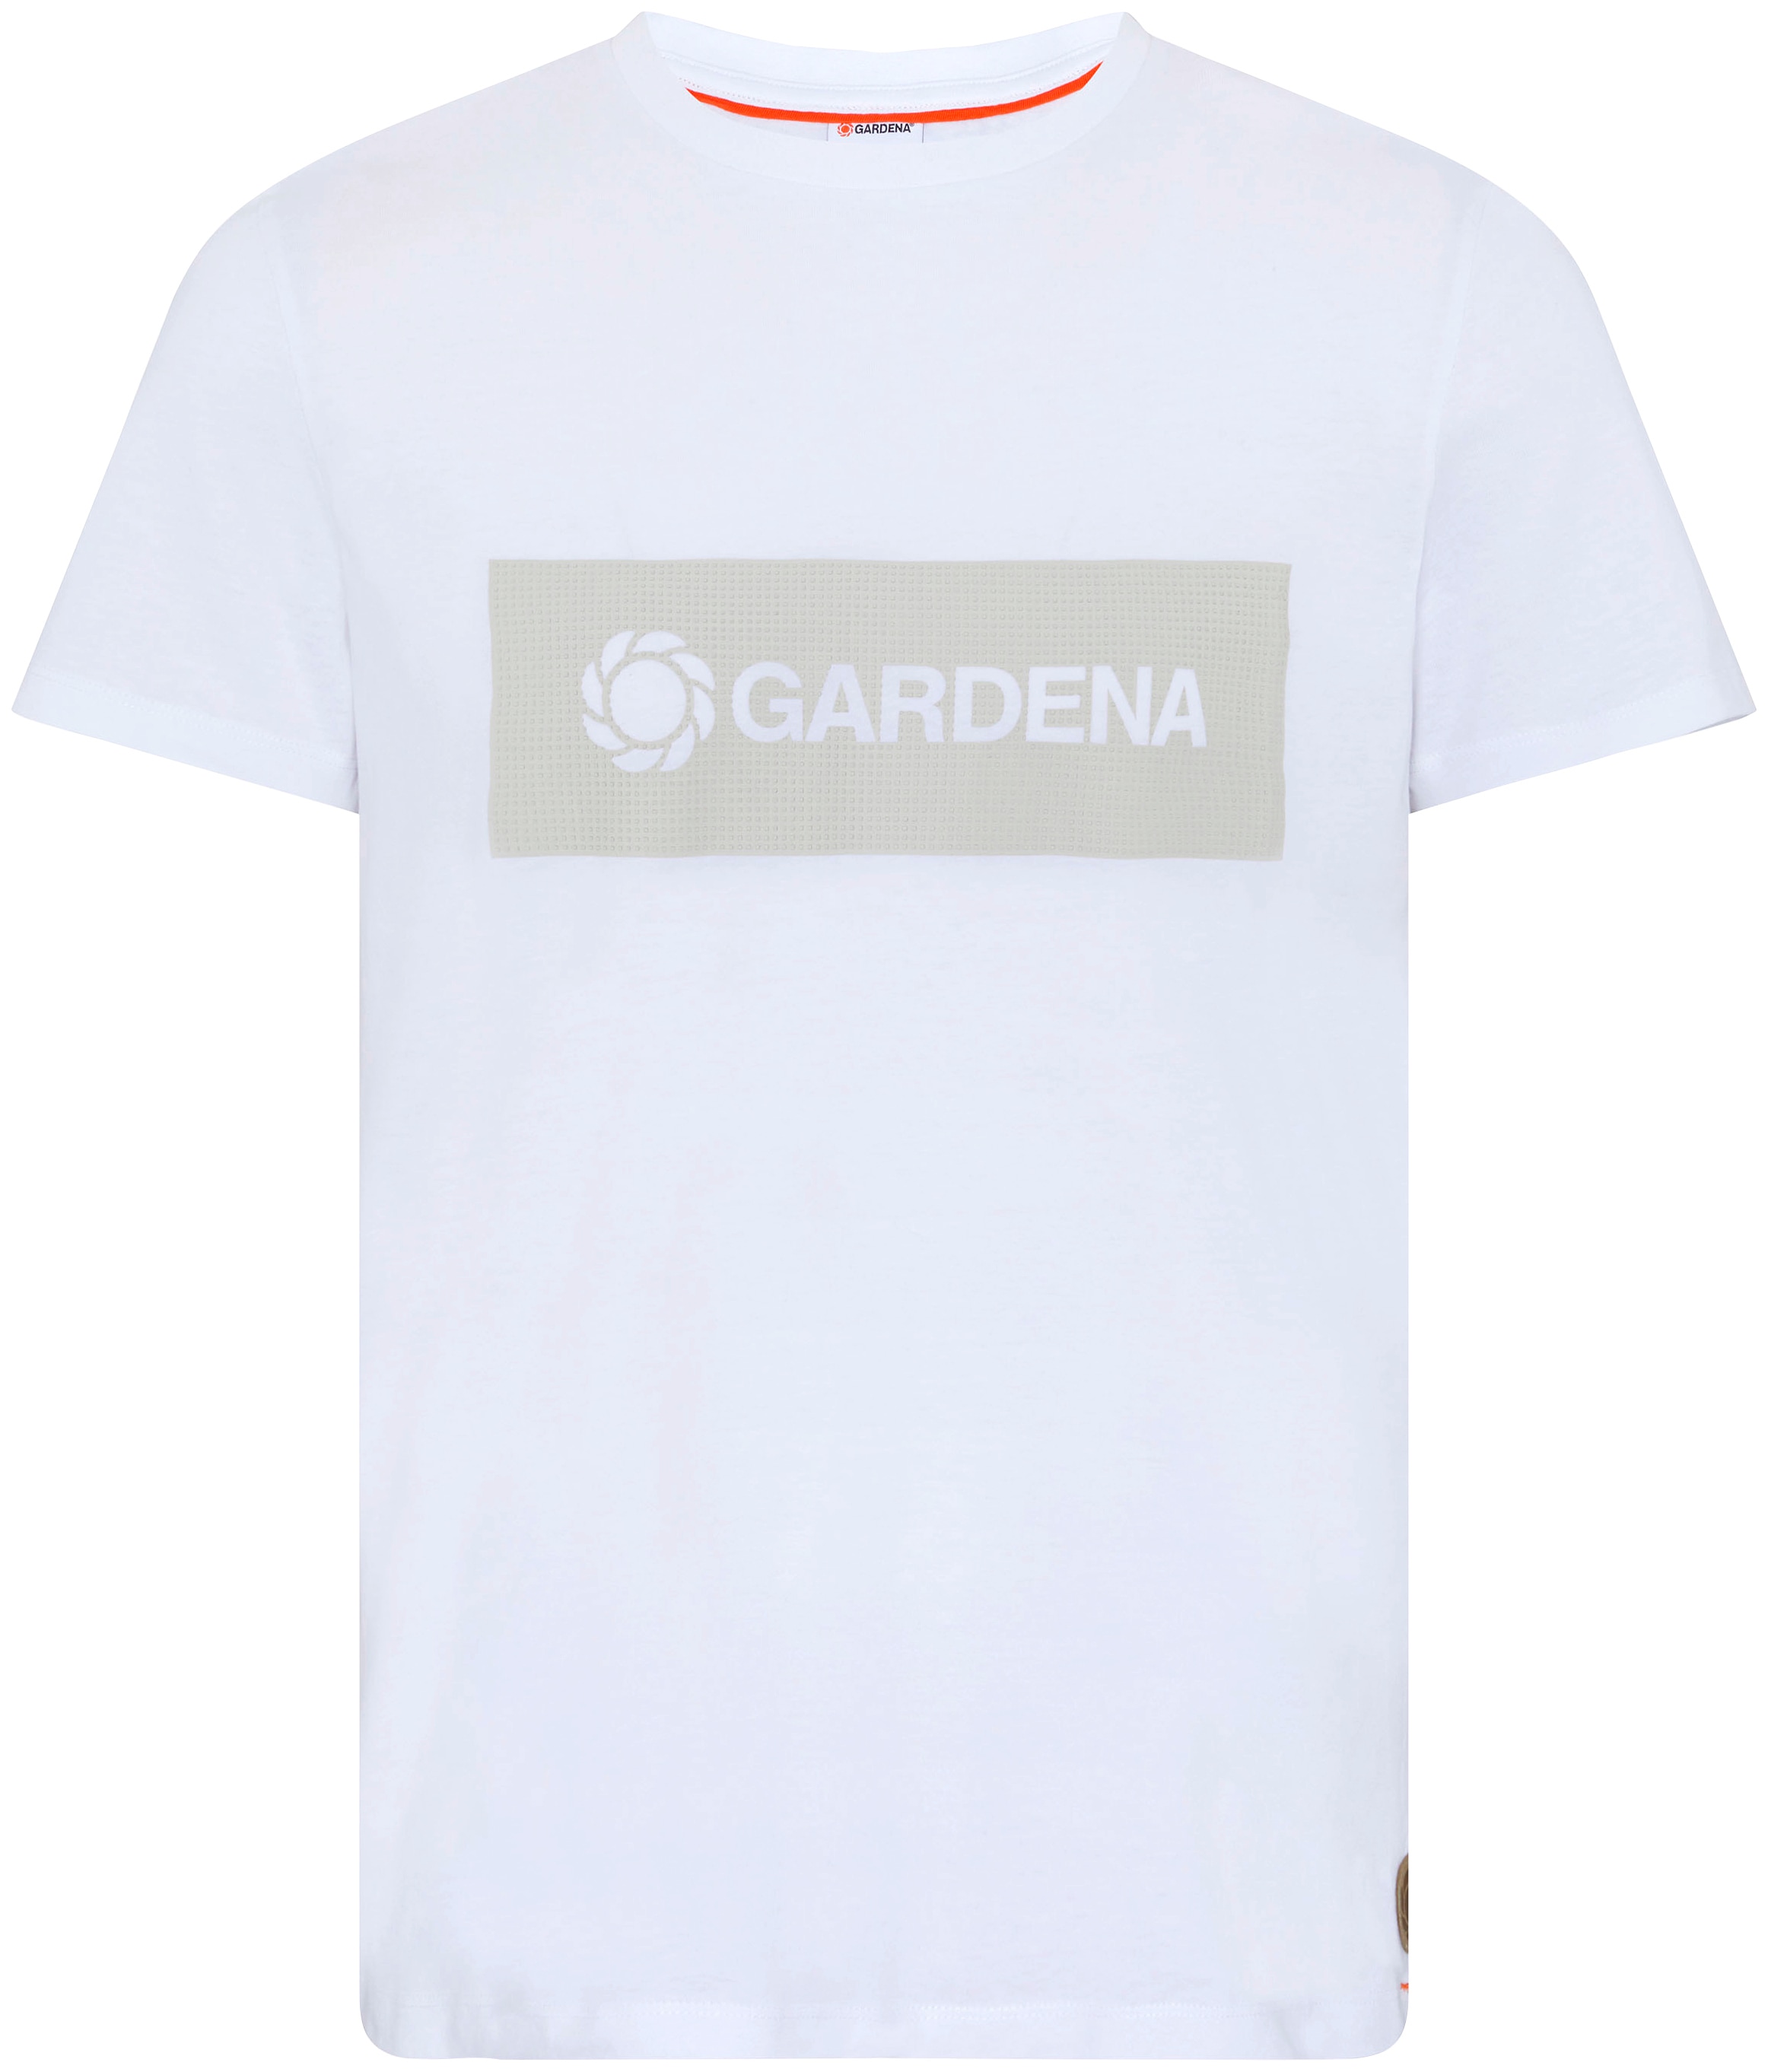 GARDENA T-Shirt »Bright White«, mit Gardena-Logodruck